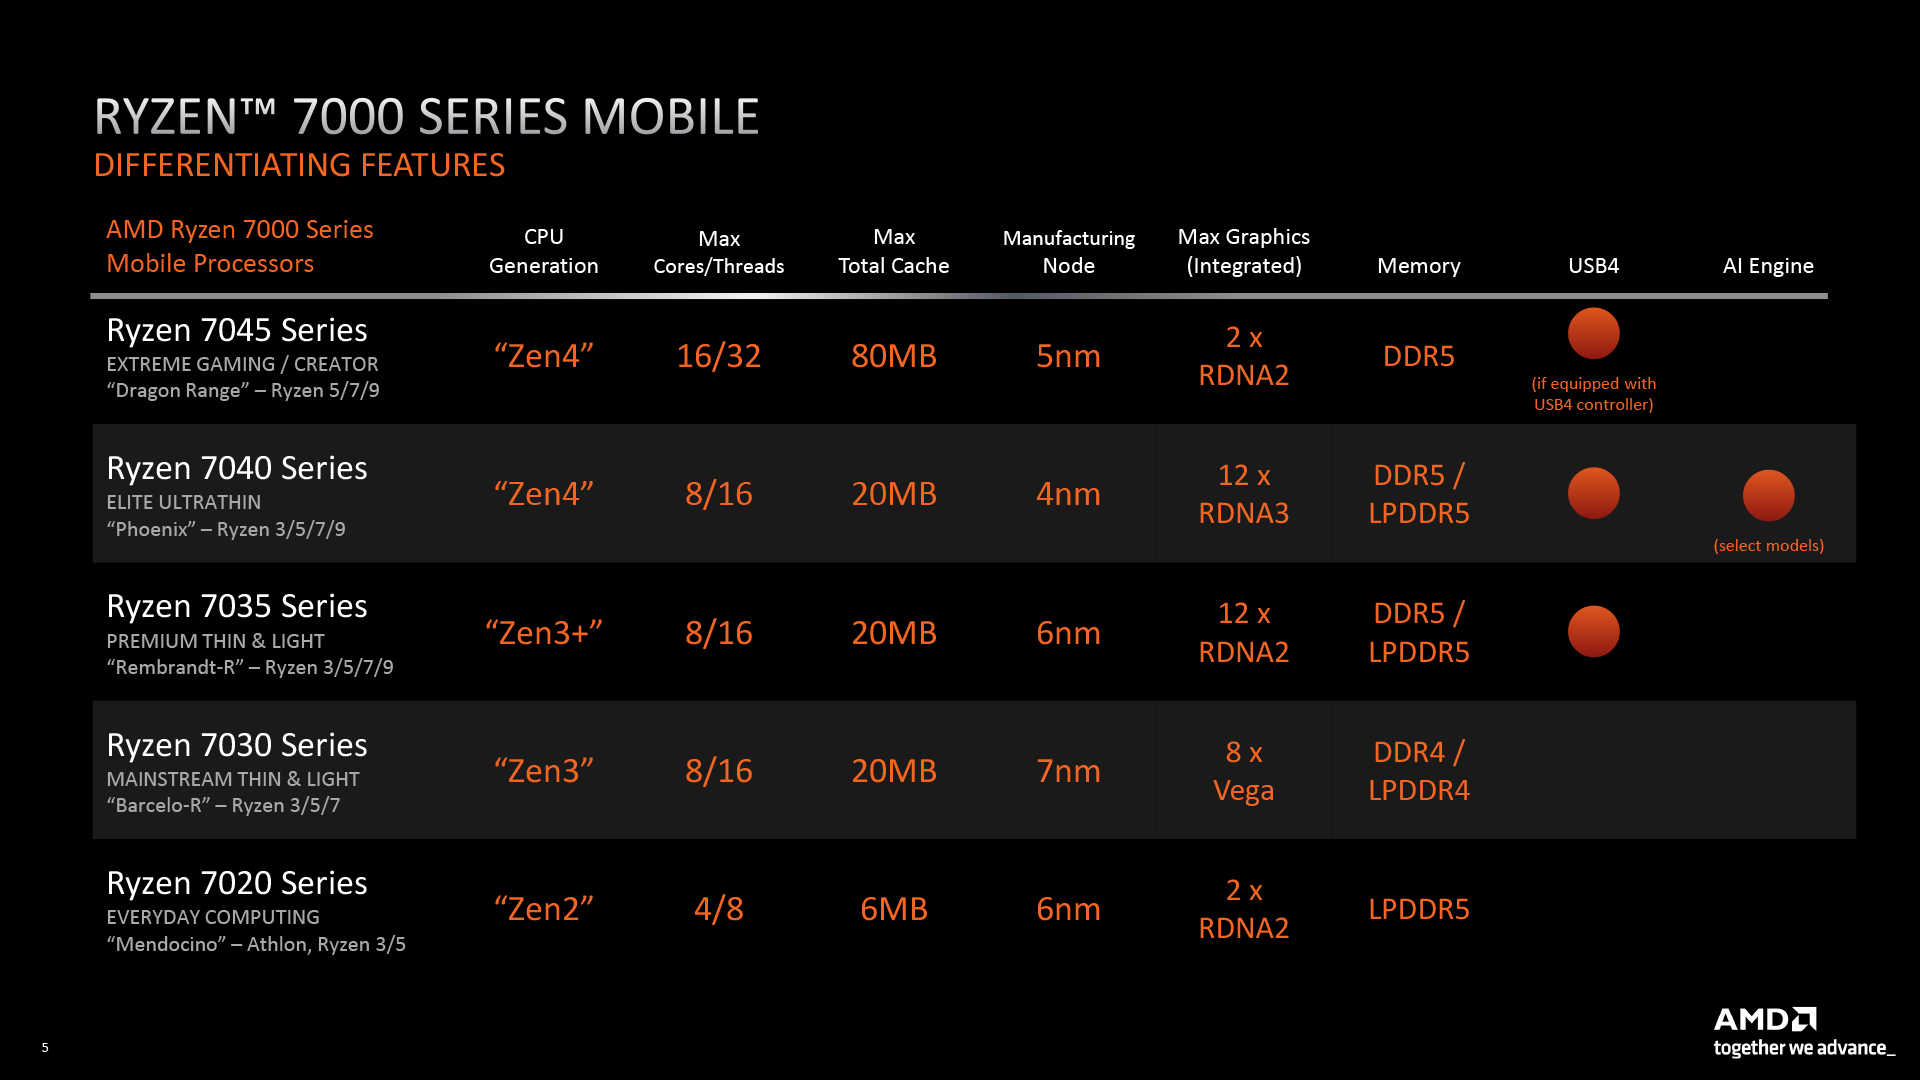 AMD Ryzen 7000 mobile processors